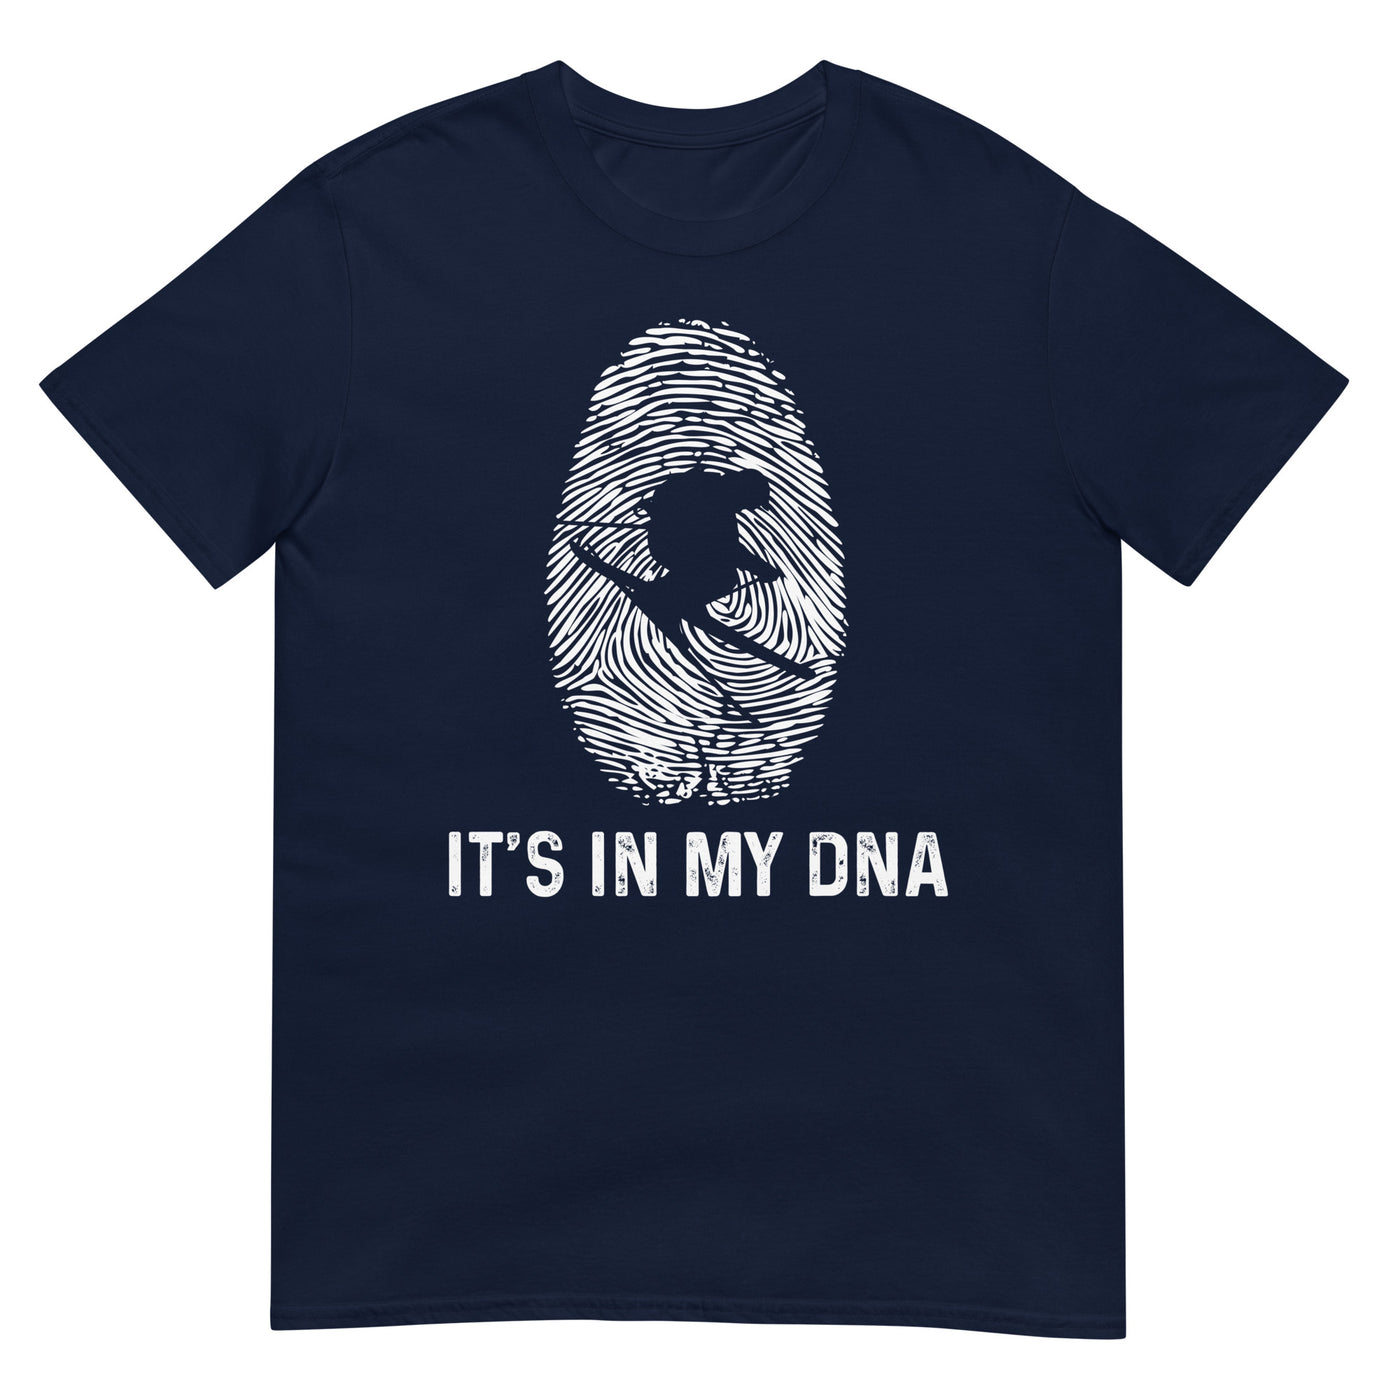 It's In My DNA - T-Shirt (Unisex) klettern ski xxx yyy zzz Navy